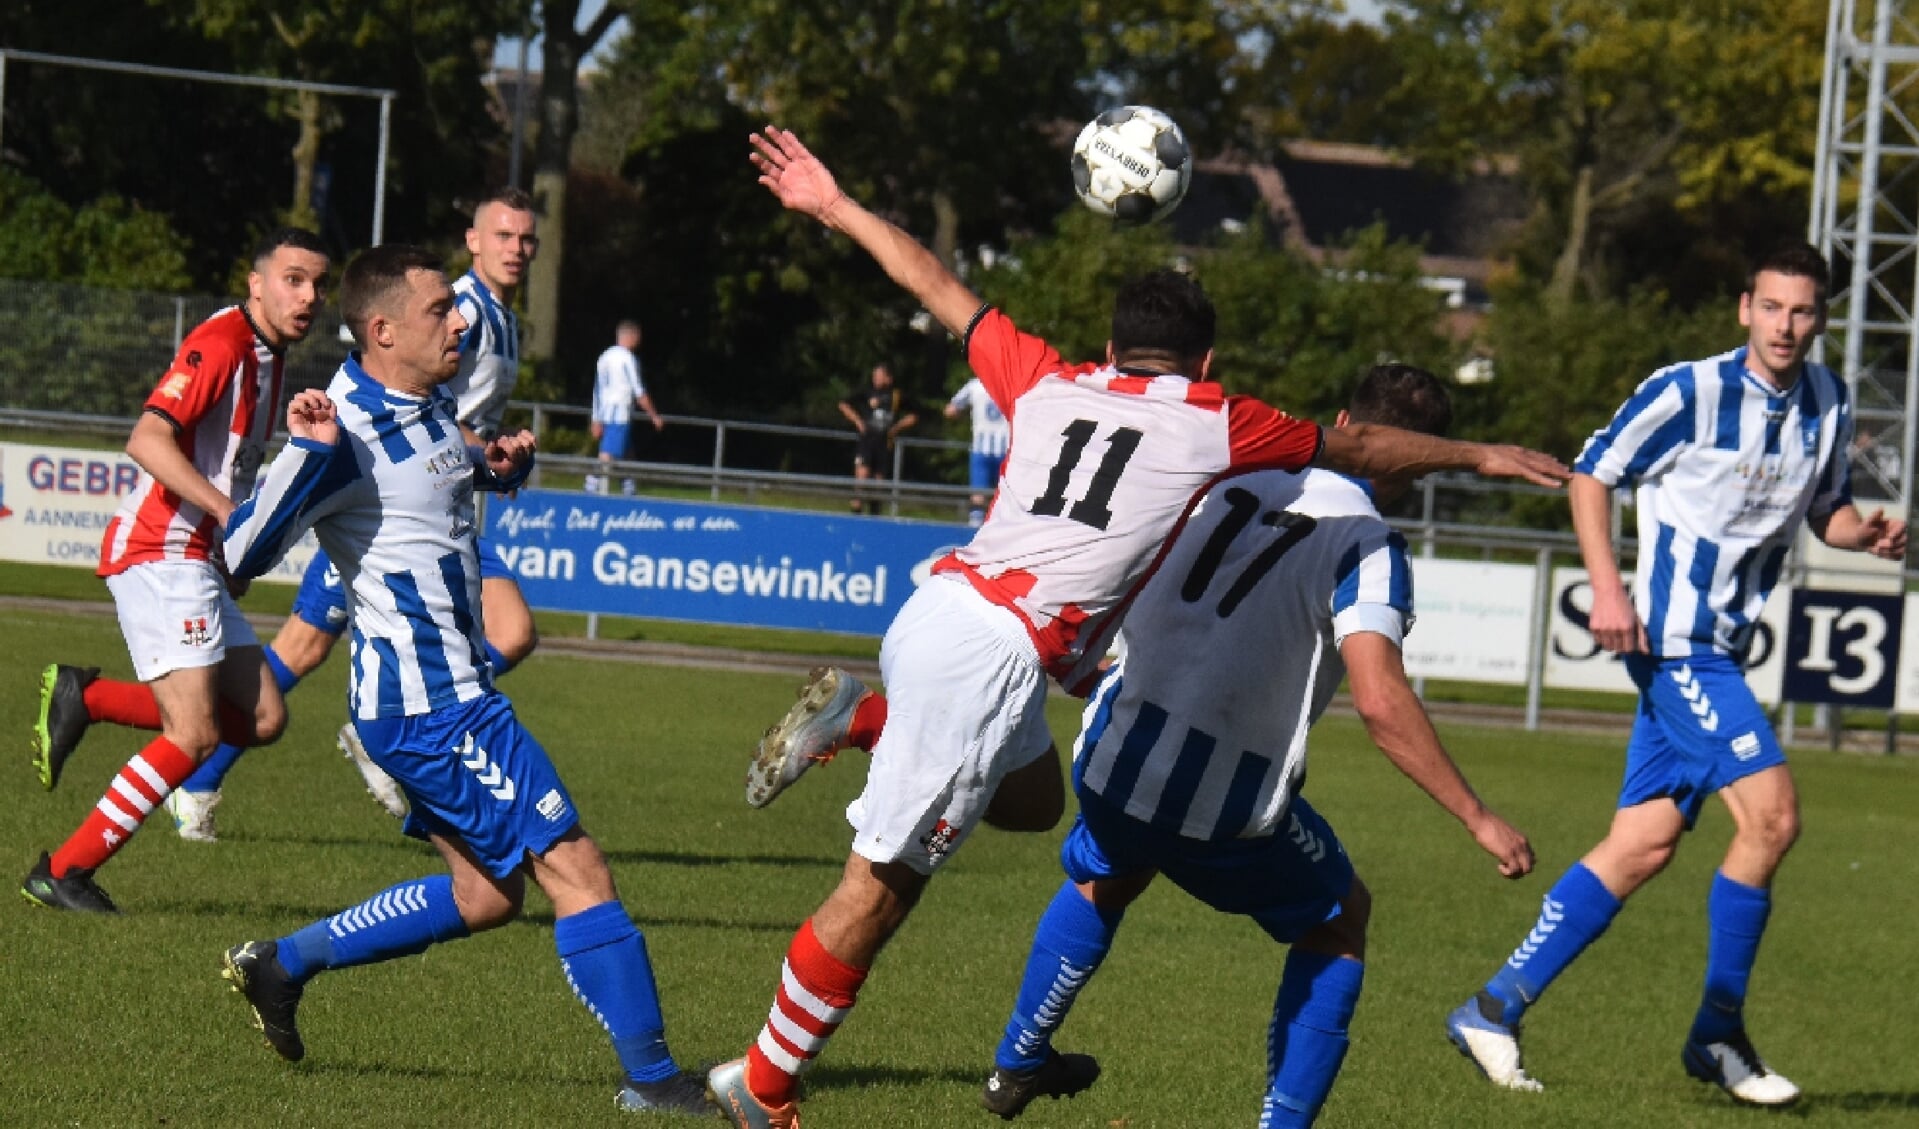 • SV Lopik - Nieuw Utrecht: 1-1